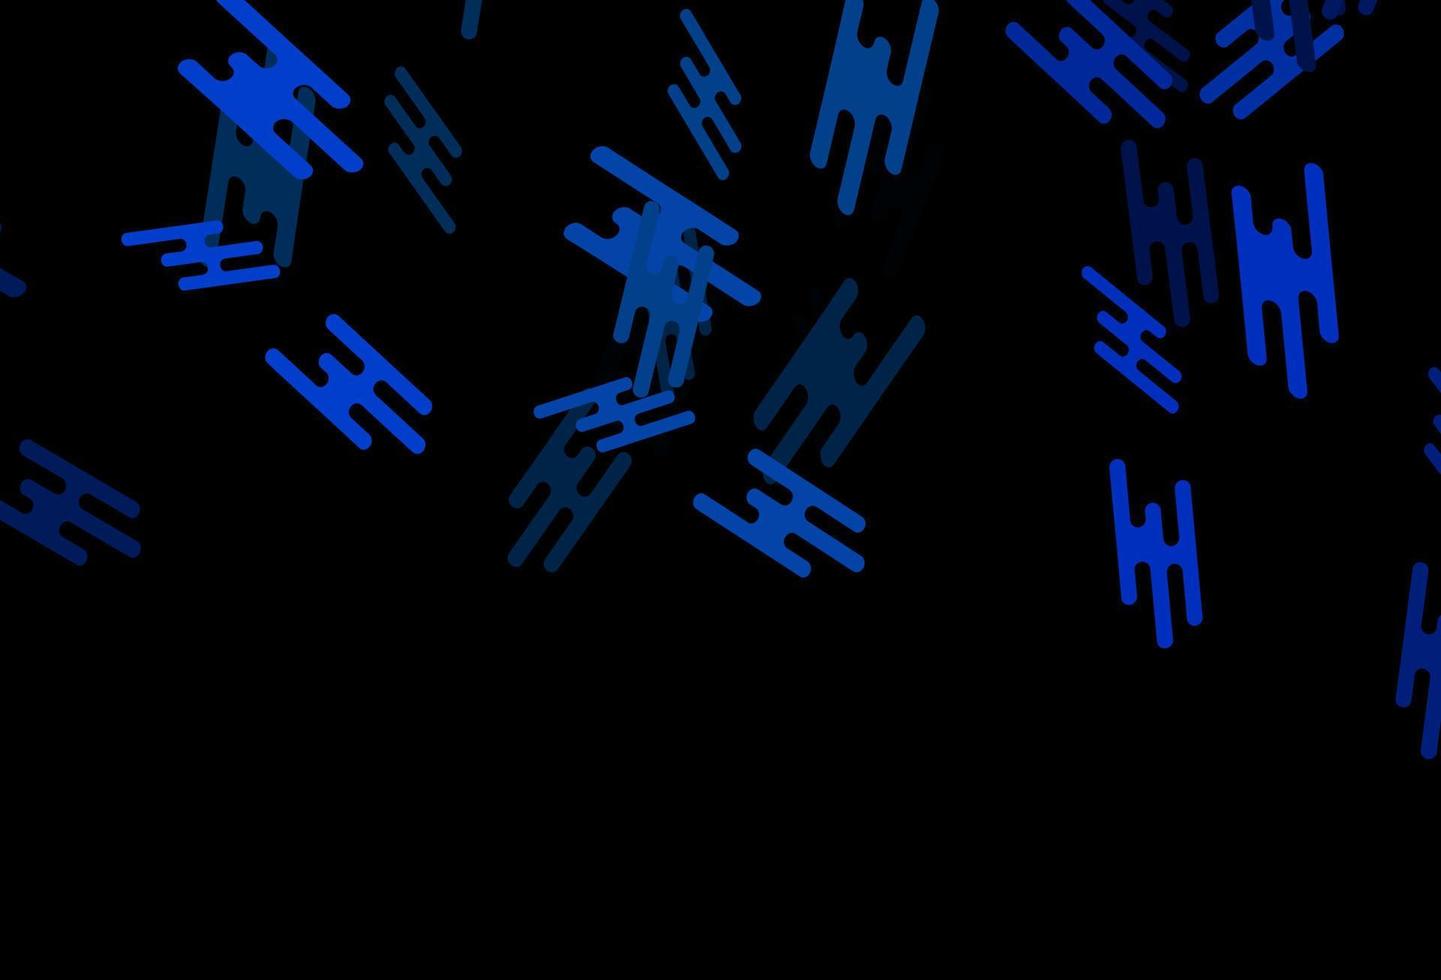 texture vecteur bleu foncé avec des lignes colorées.